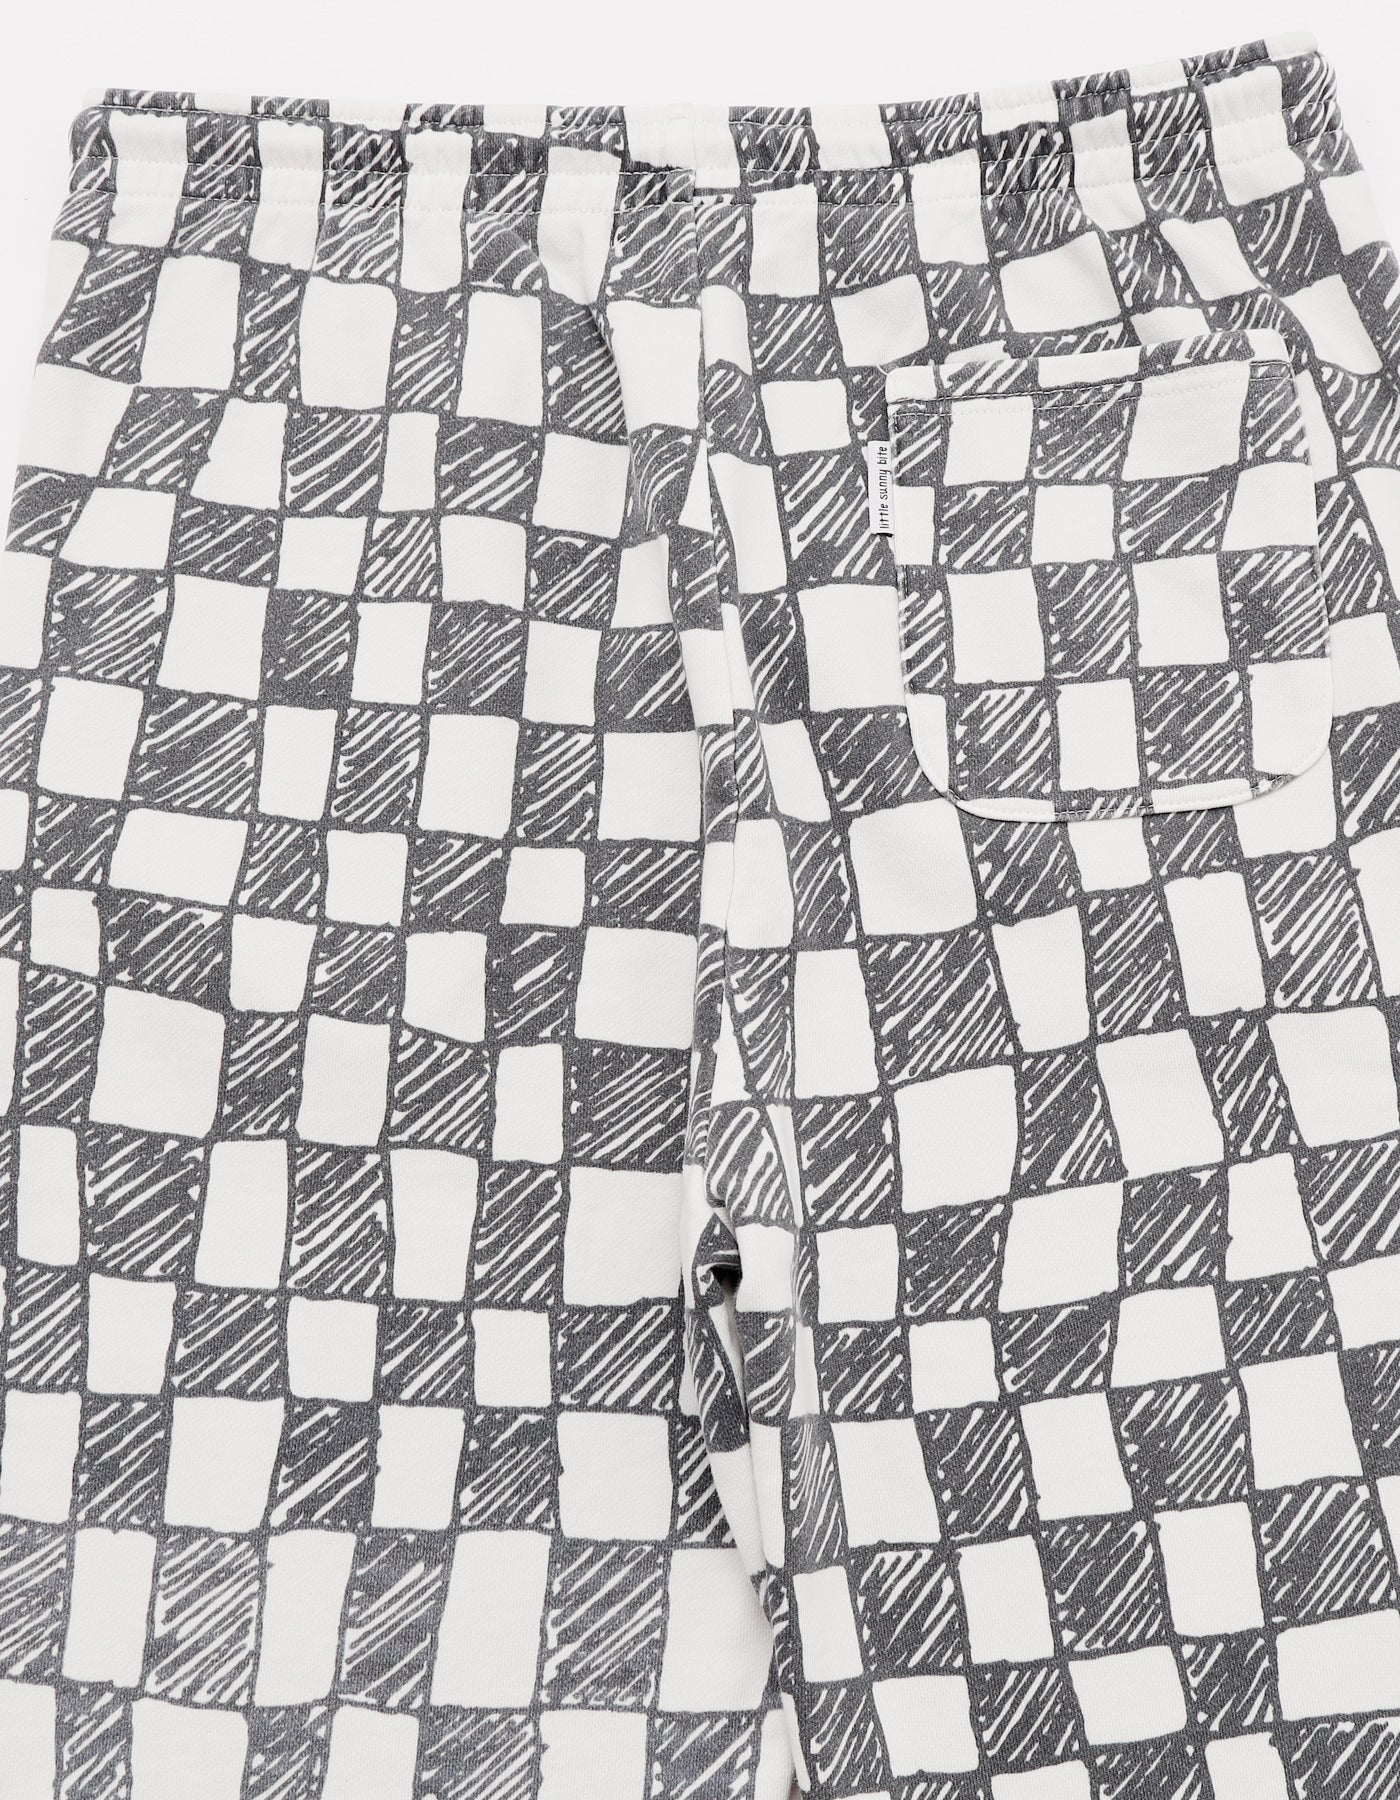 Checker sweat pants / WHITE